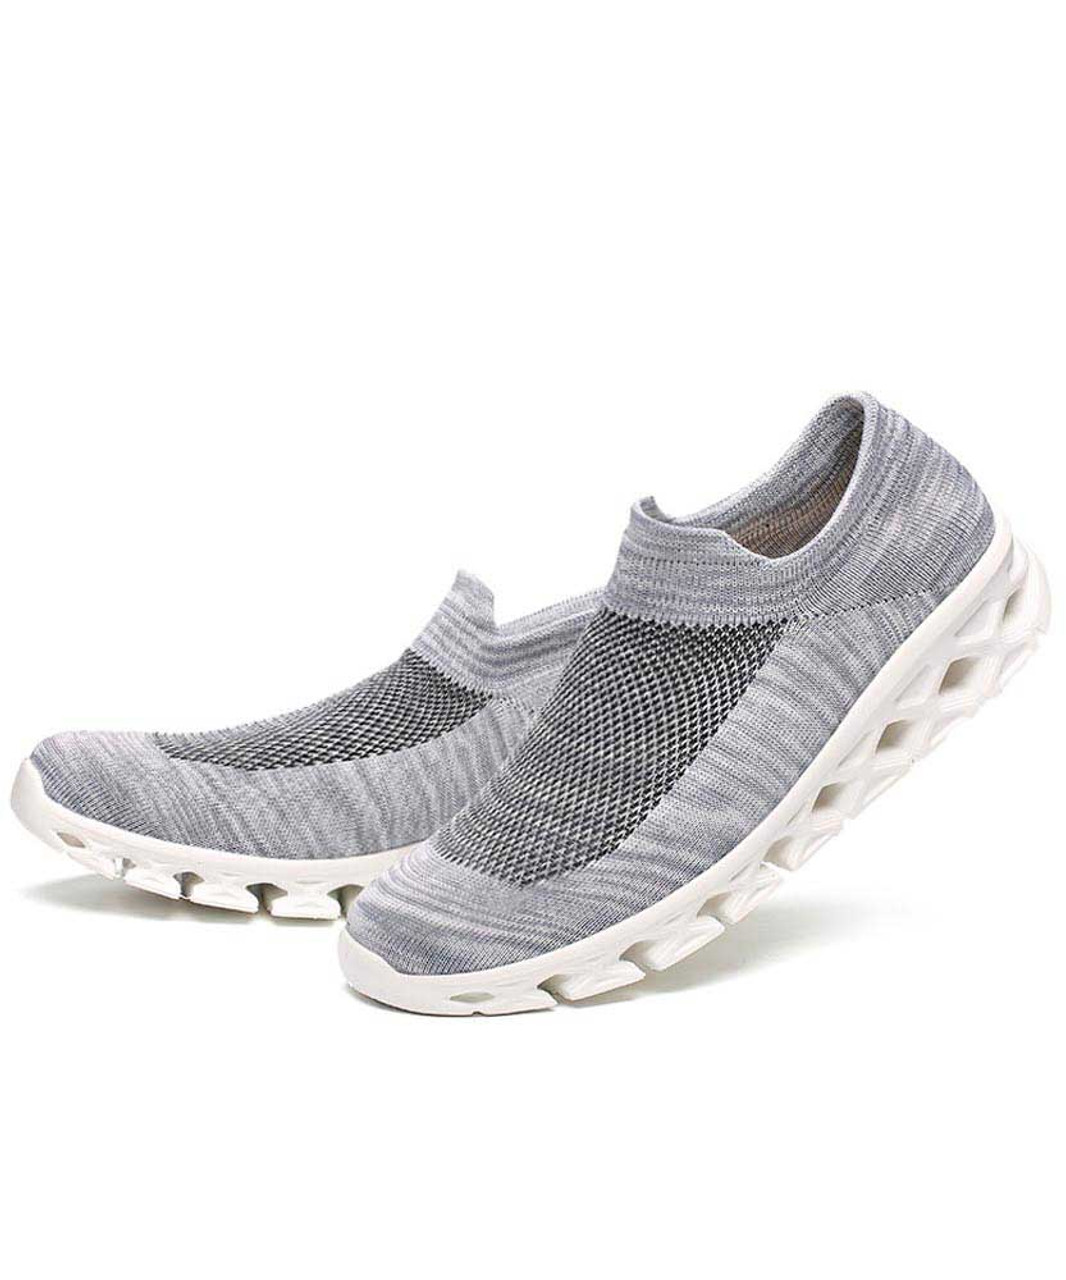 Grey texture pattern flyknit slip on shoe sneaker | Womens shoe ...